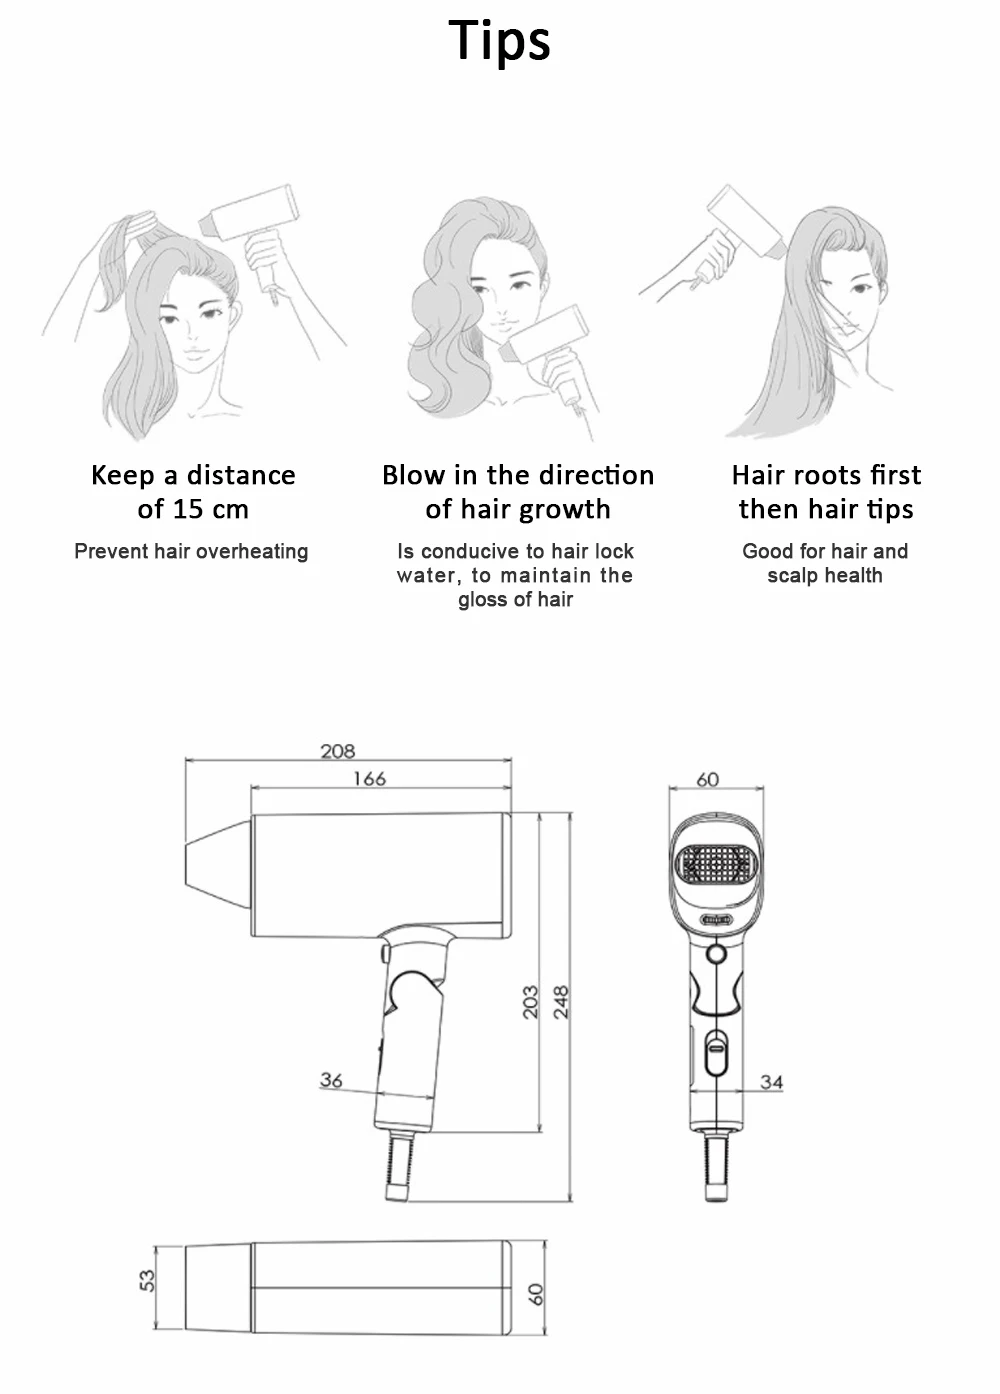 Xiaomi xumei фен для волос Smate горячий холодный ветер Уход за волосами защита здоровья фен Инструменты для укладки волос для дома путешествия отель Парикмахерская